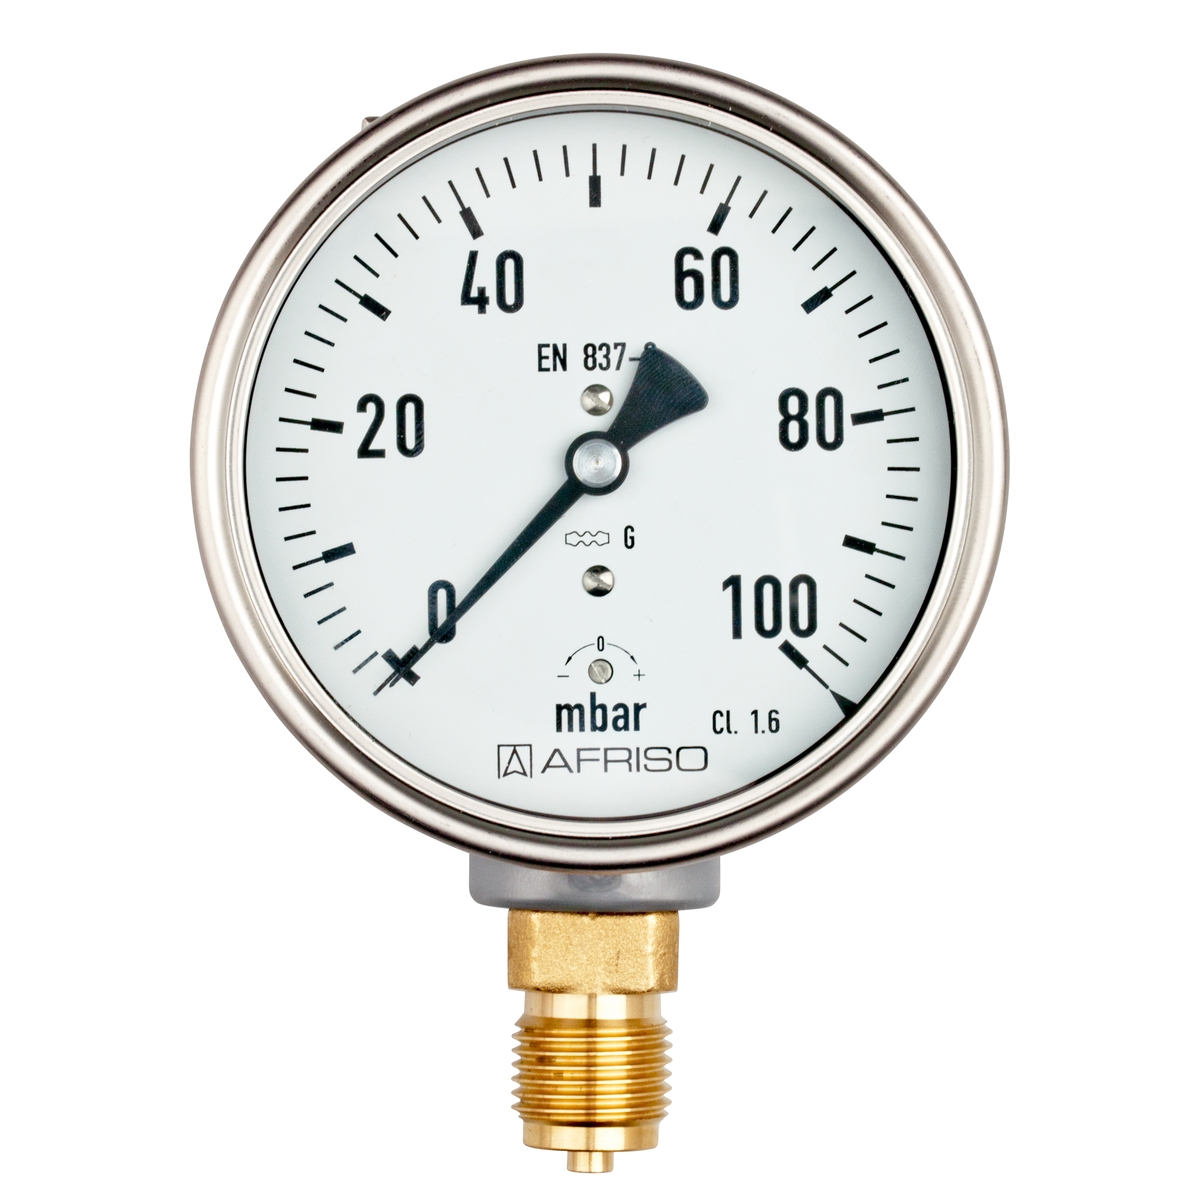 Manometr KP 100 pro plynná média, nerezový, Ø 100 mm, 0 ÷ 60 mbar, G½", radiální, typ D4 - AFRISO.CZ